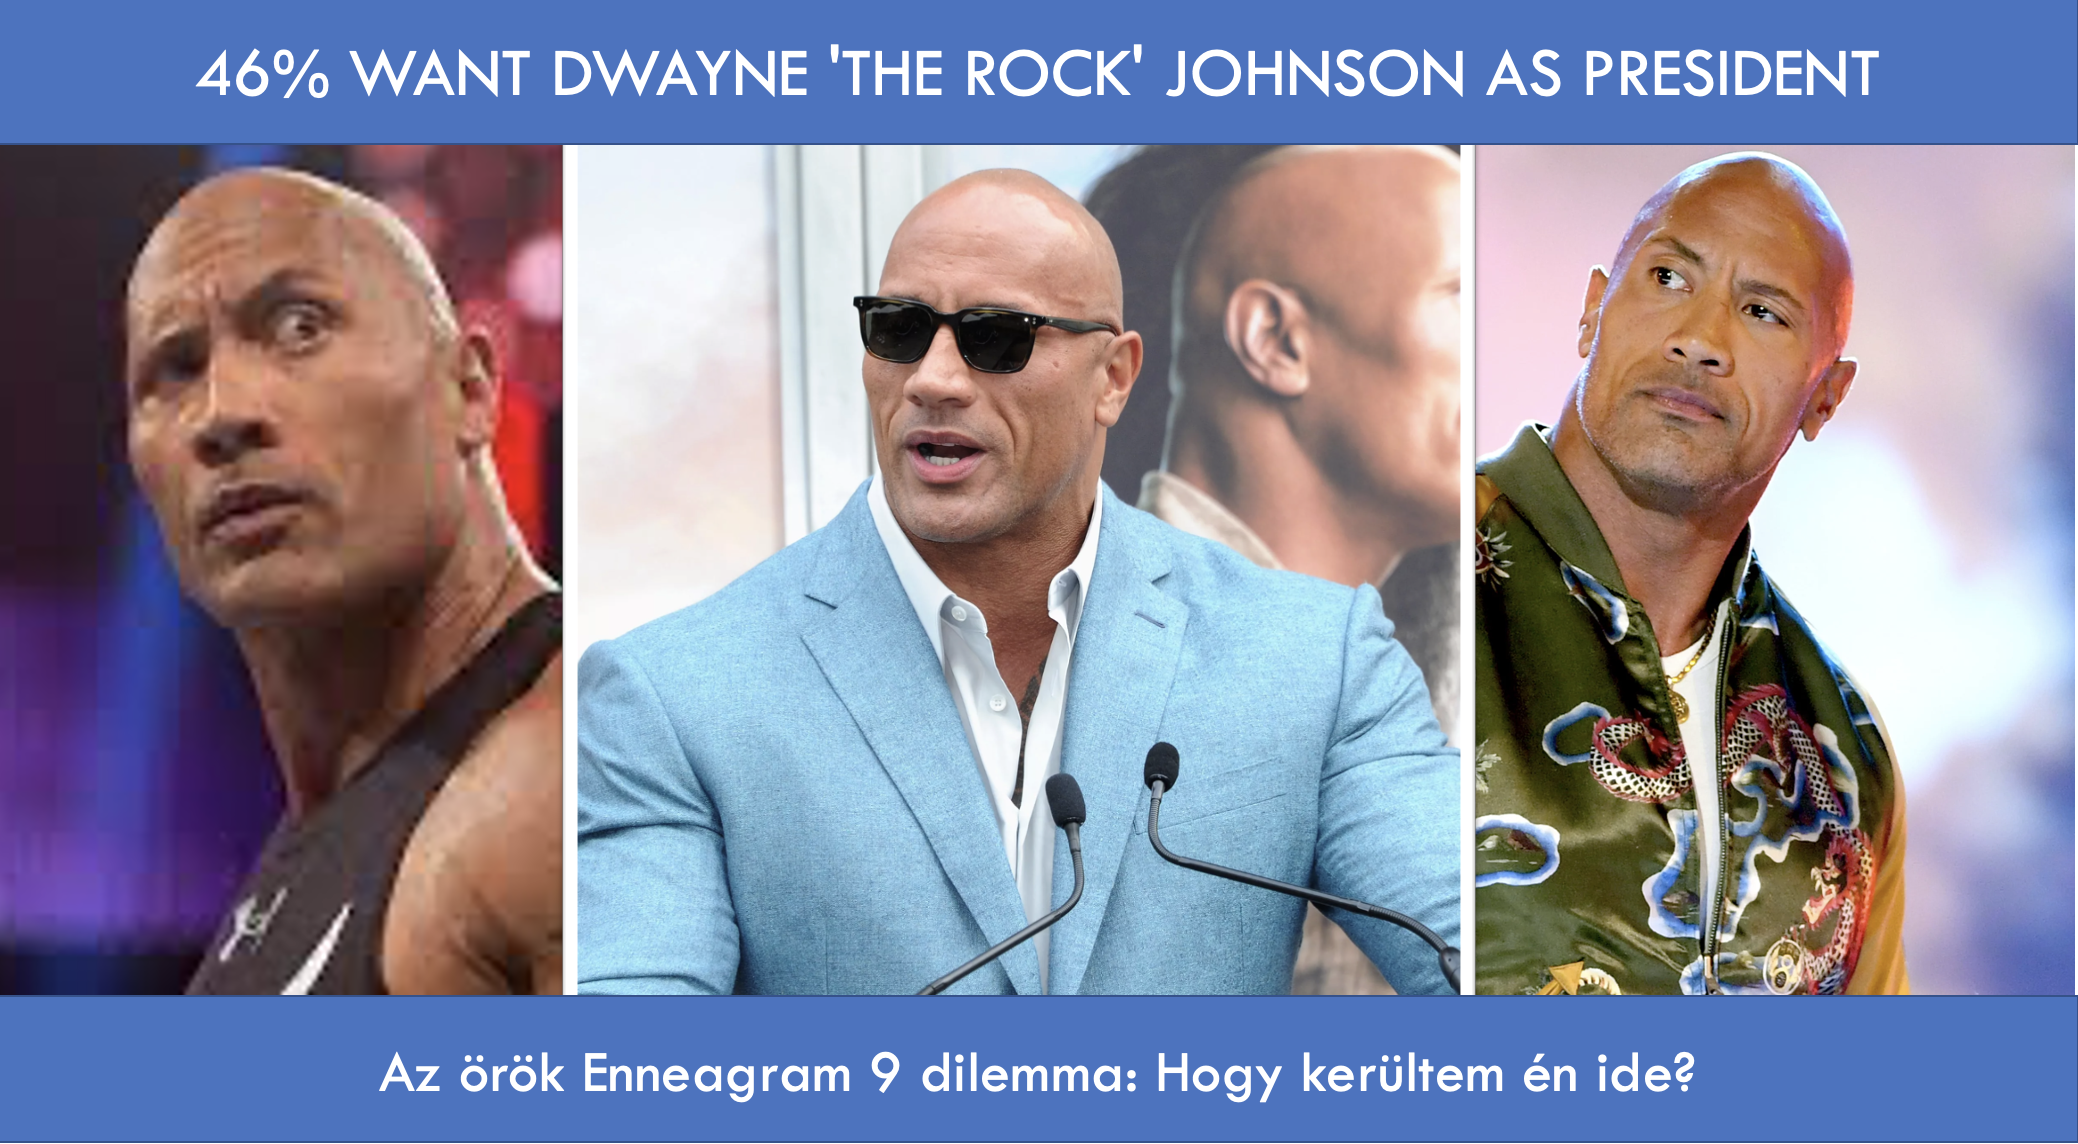 Dwayne 'The Rock' as President